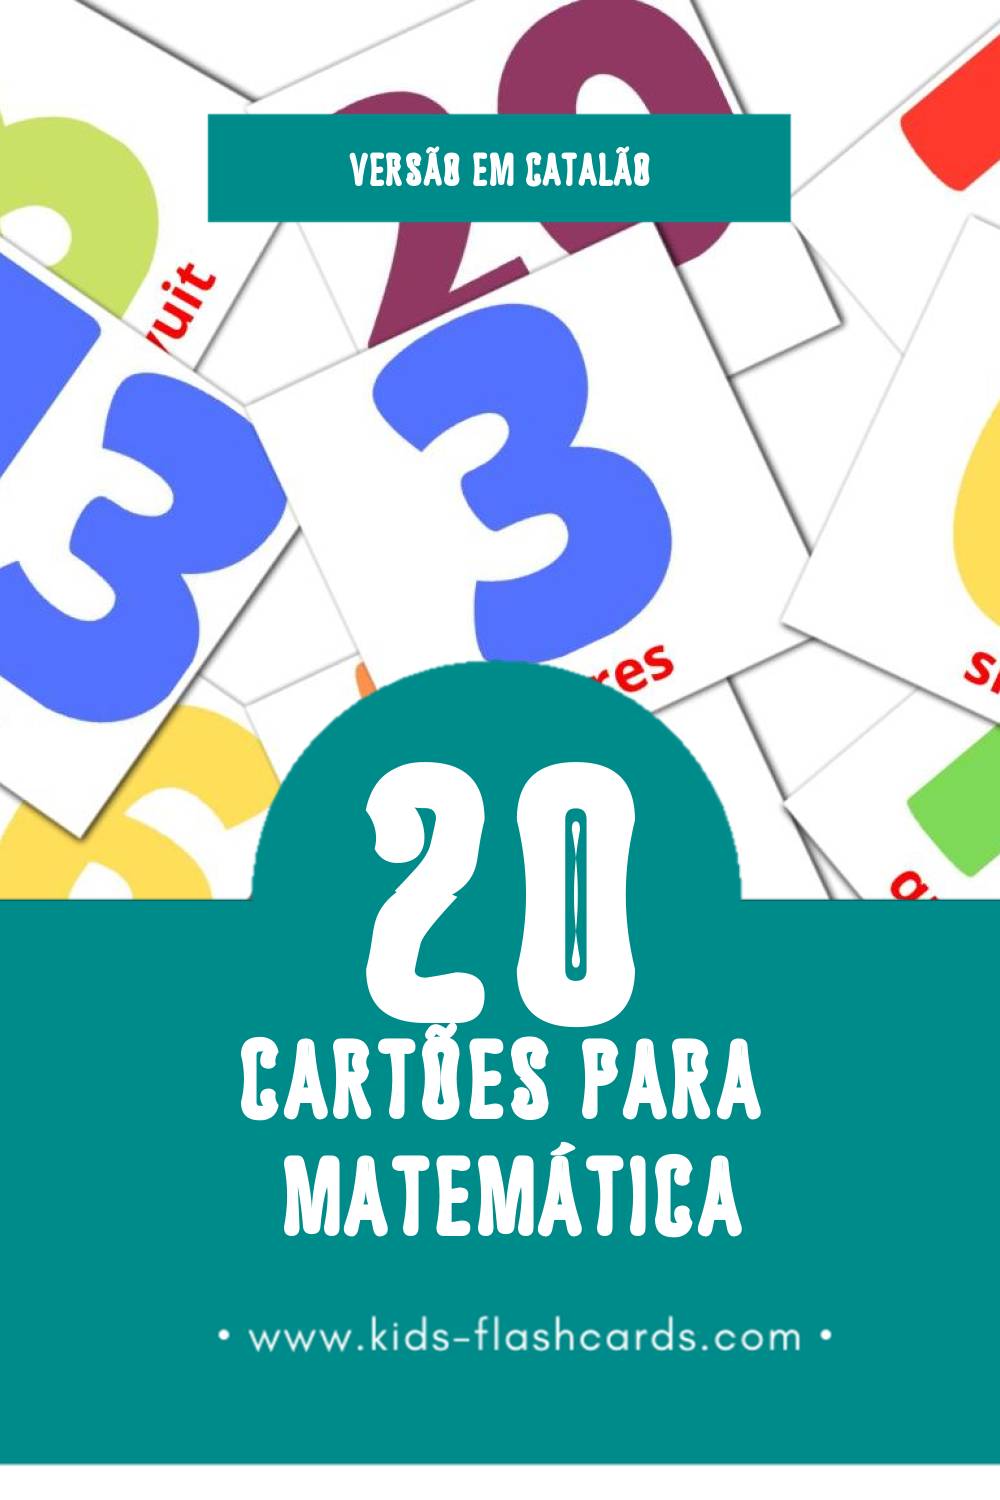 Flashcards de Matemàtiques  Visuais para Toddlers (20 cartões em Catalão)